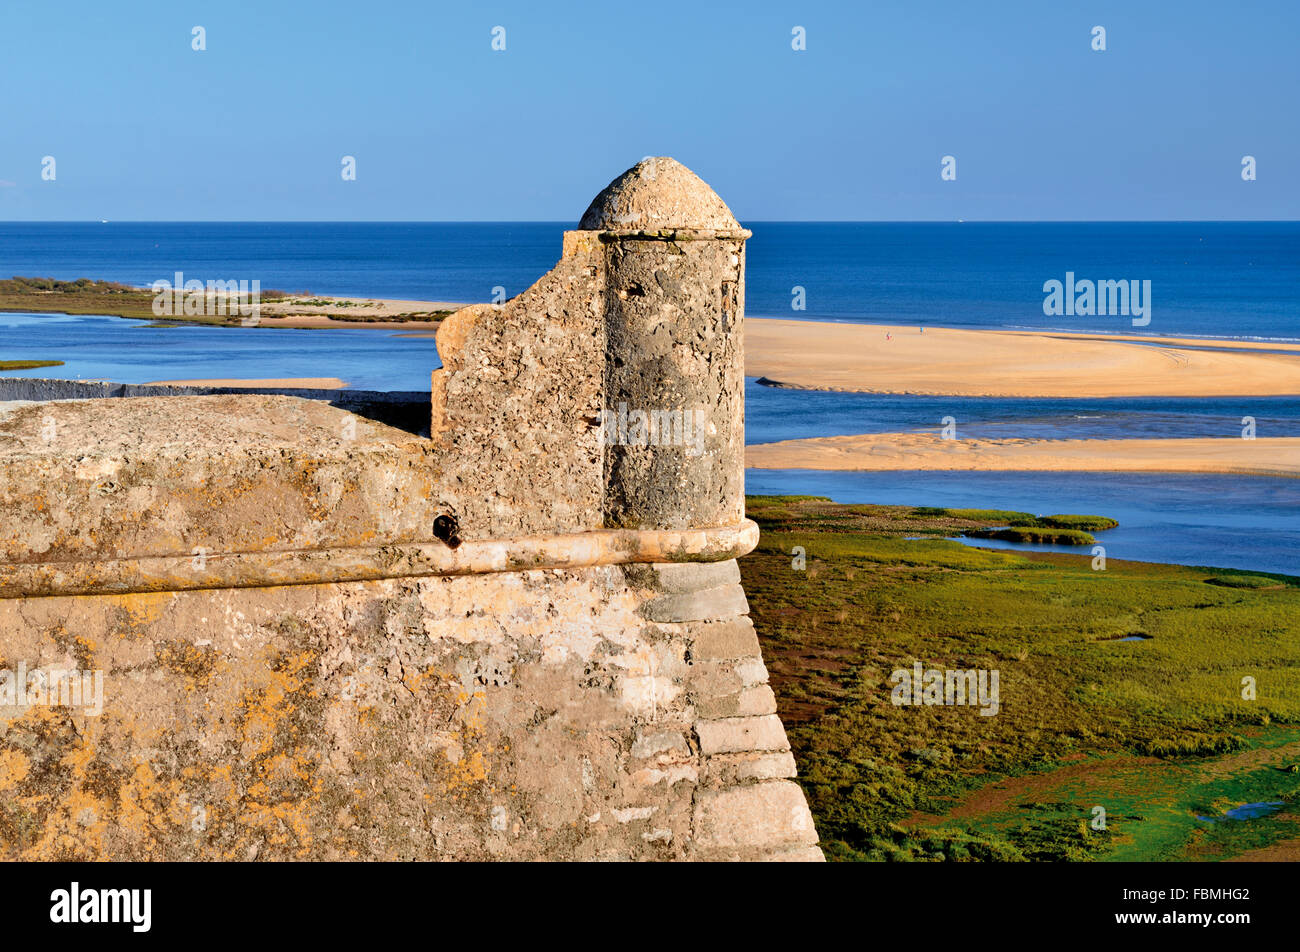 Portugal : Détail de la forteresse de Cacela Velha avec vue sur l'océan à Ria Formosa Banque D'Images